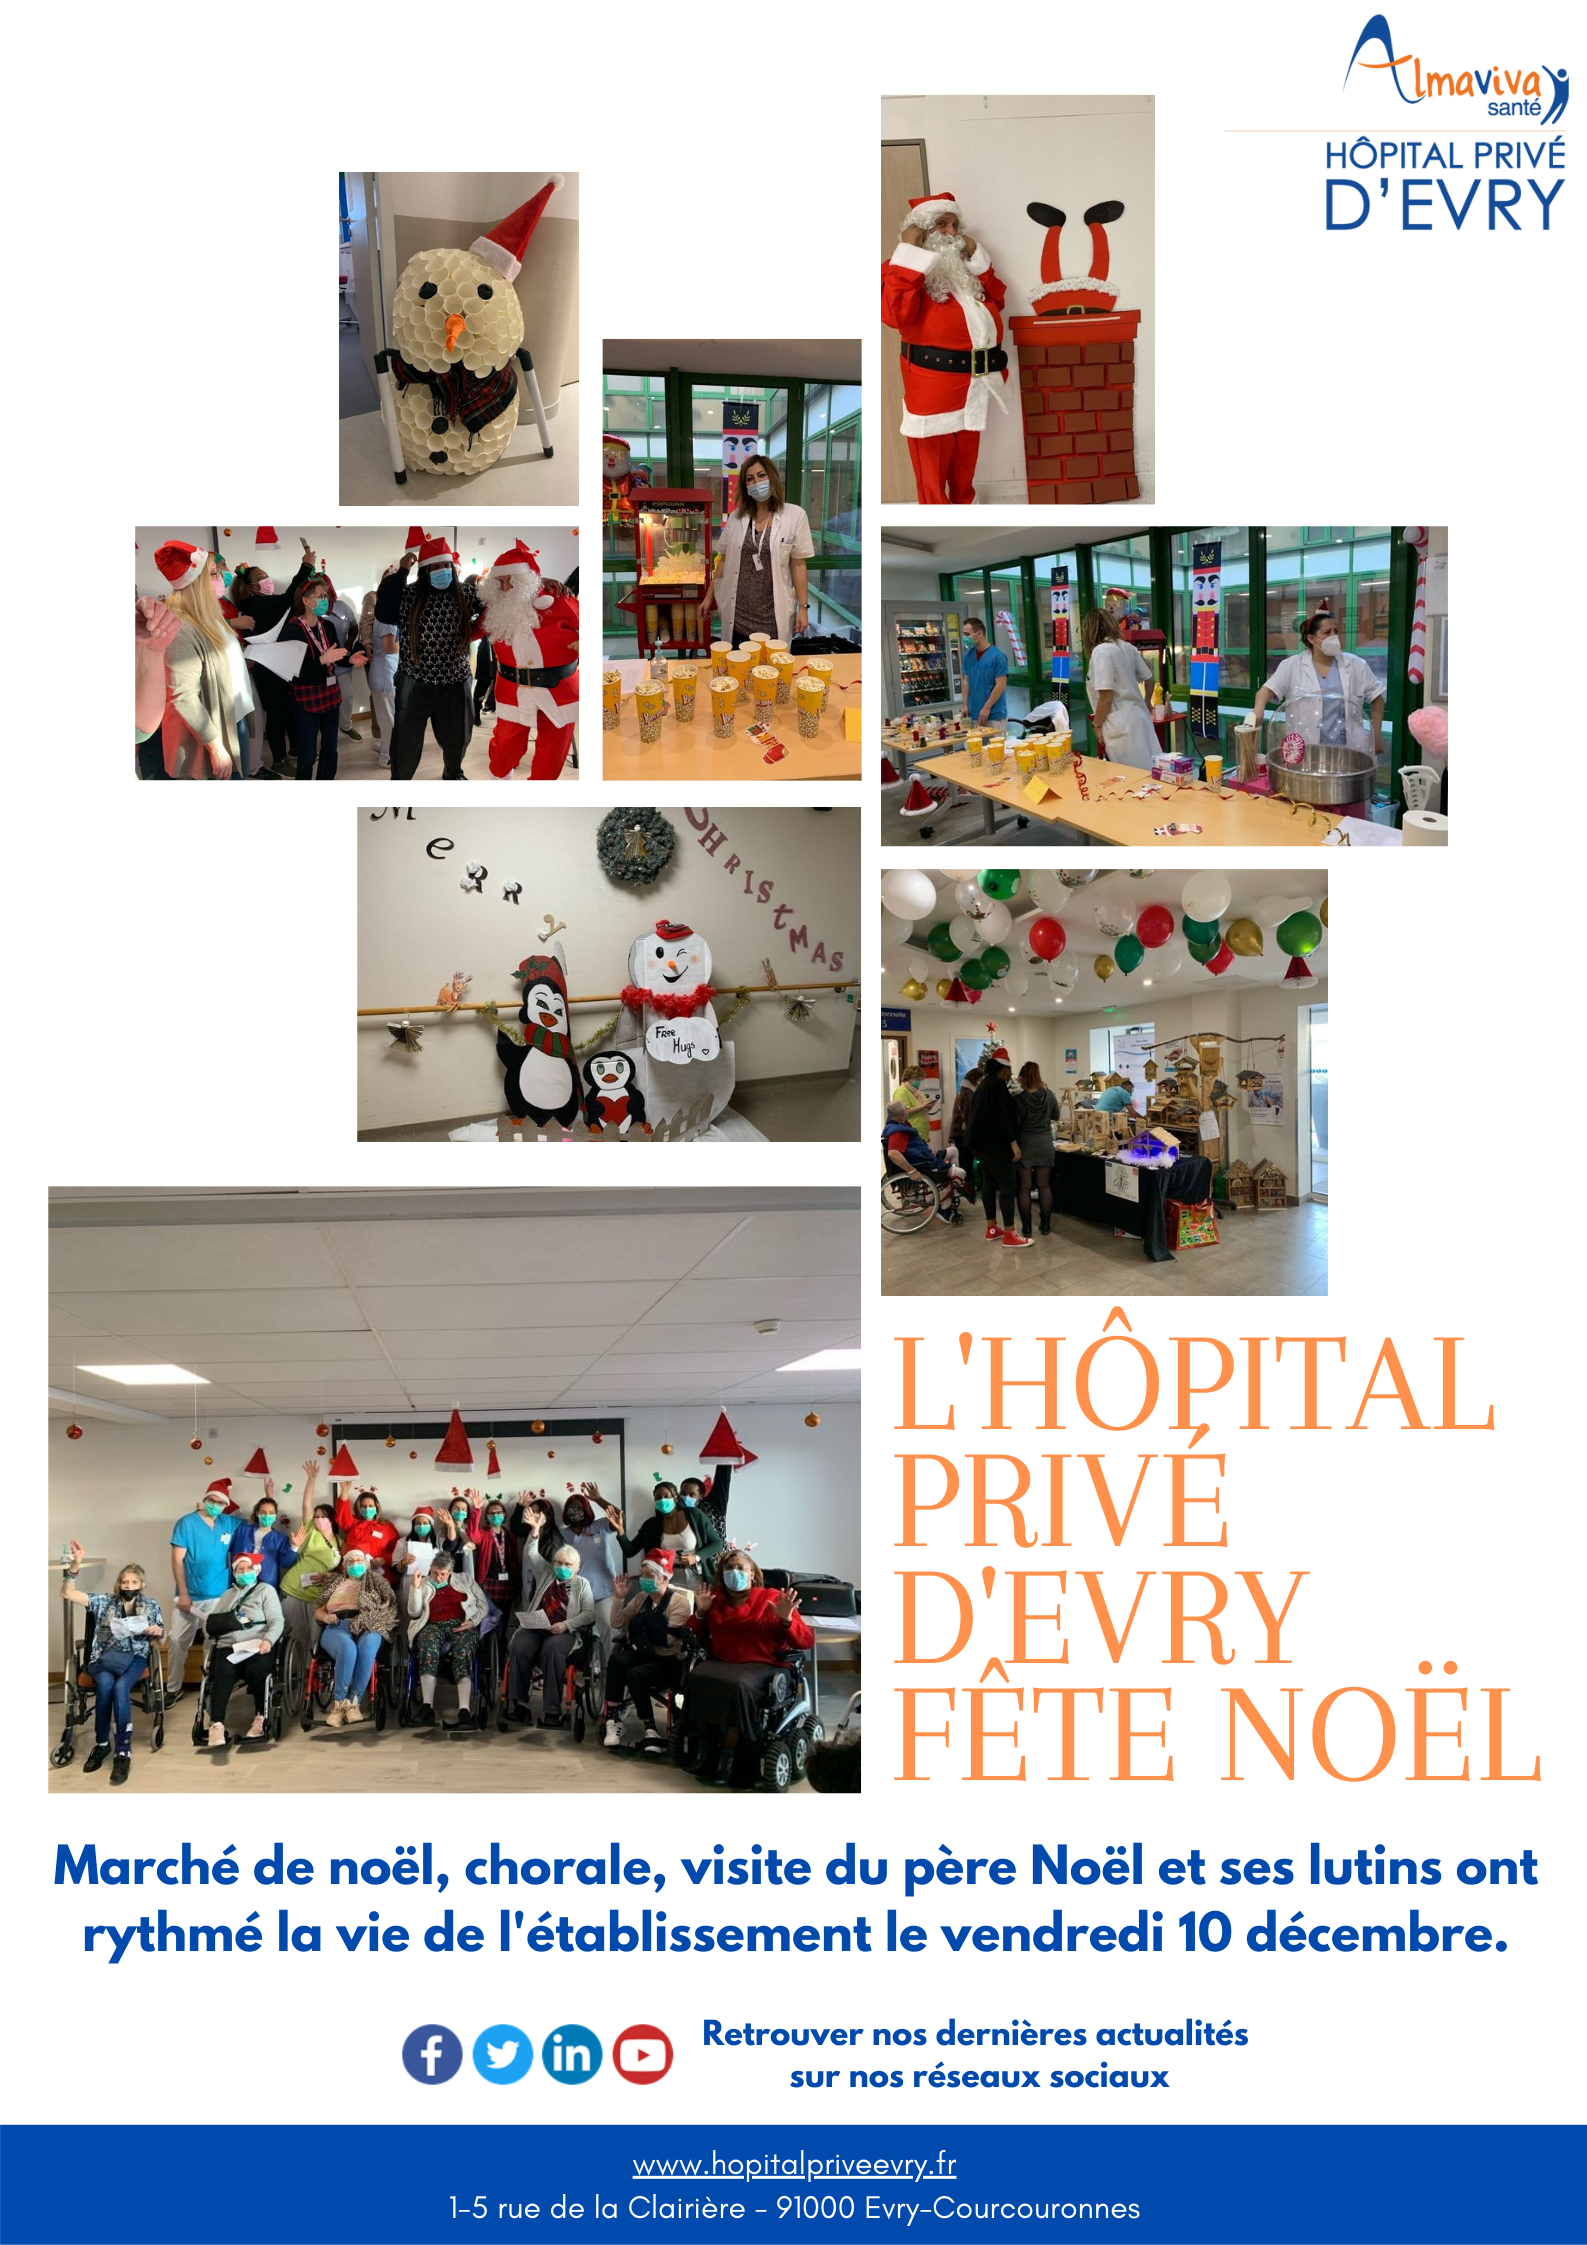 L'Hôpital Privé d'Evry fête Noël :